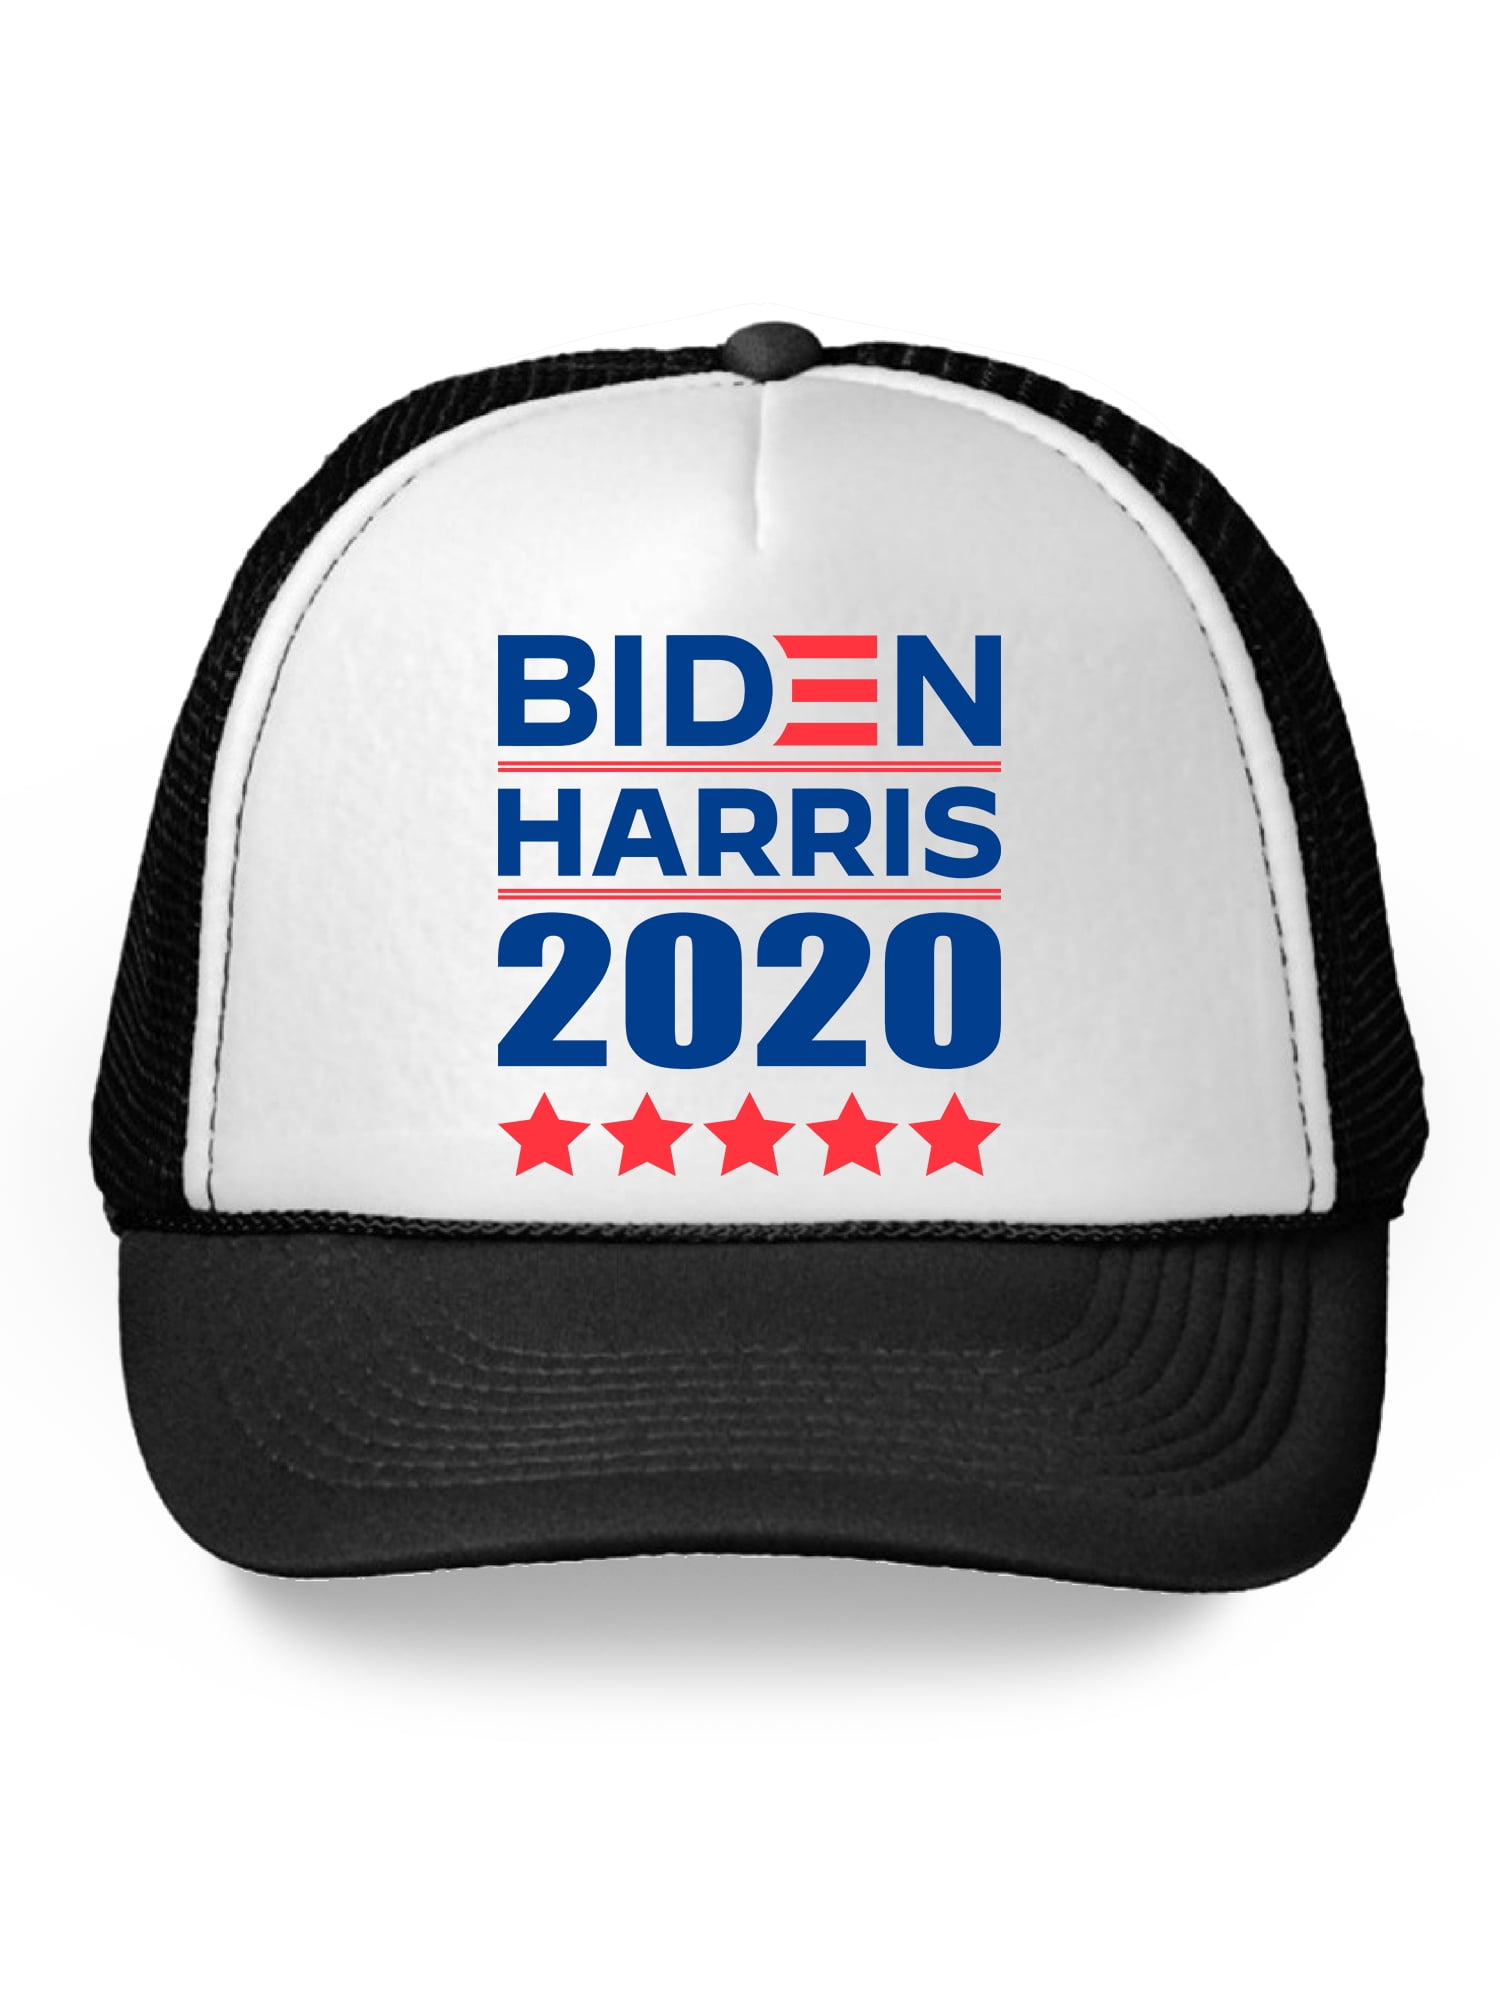 Joe Biden for President Embroidered Hat Highlander Hat with Flag on Side 